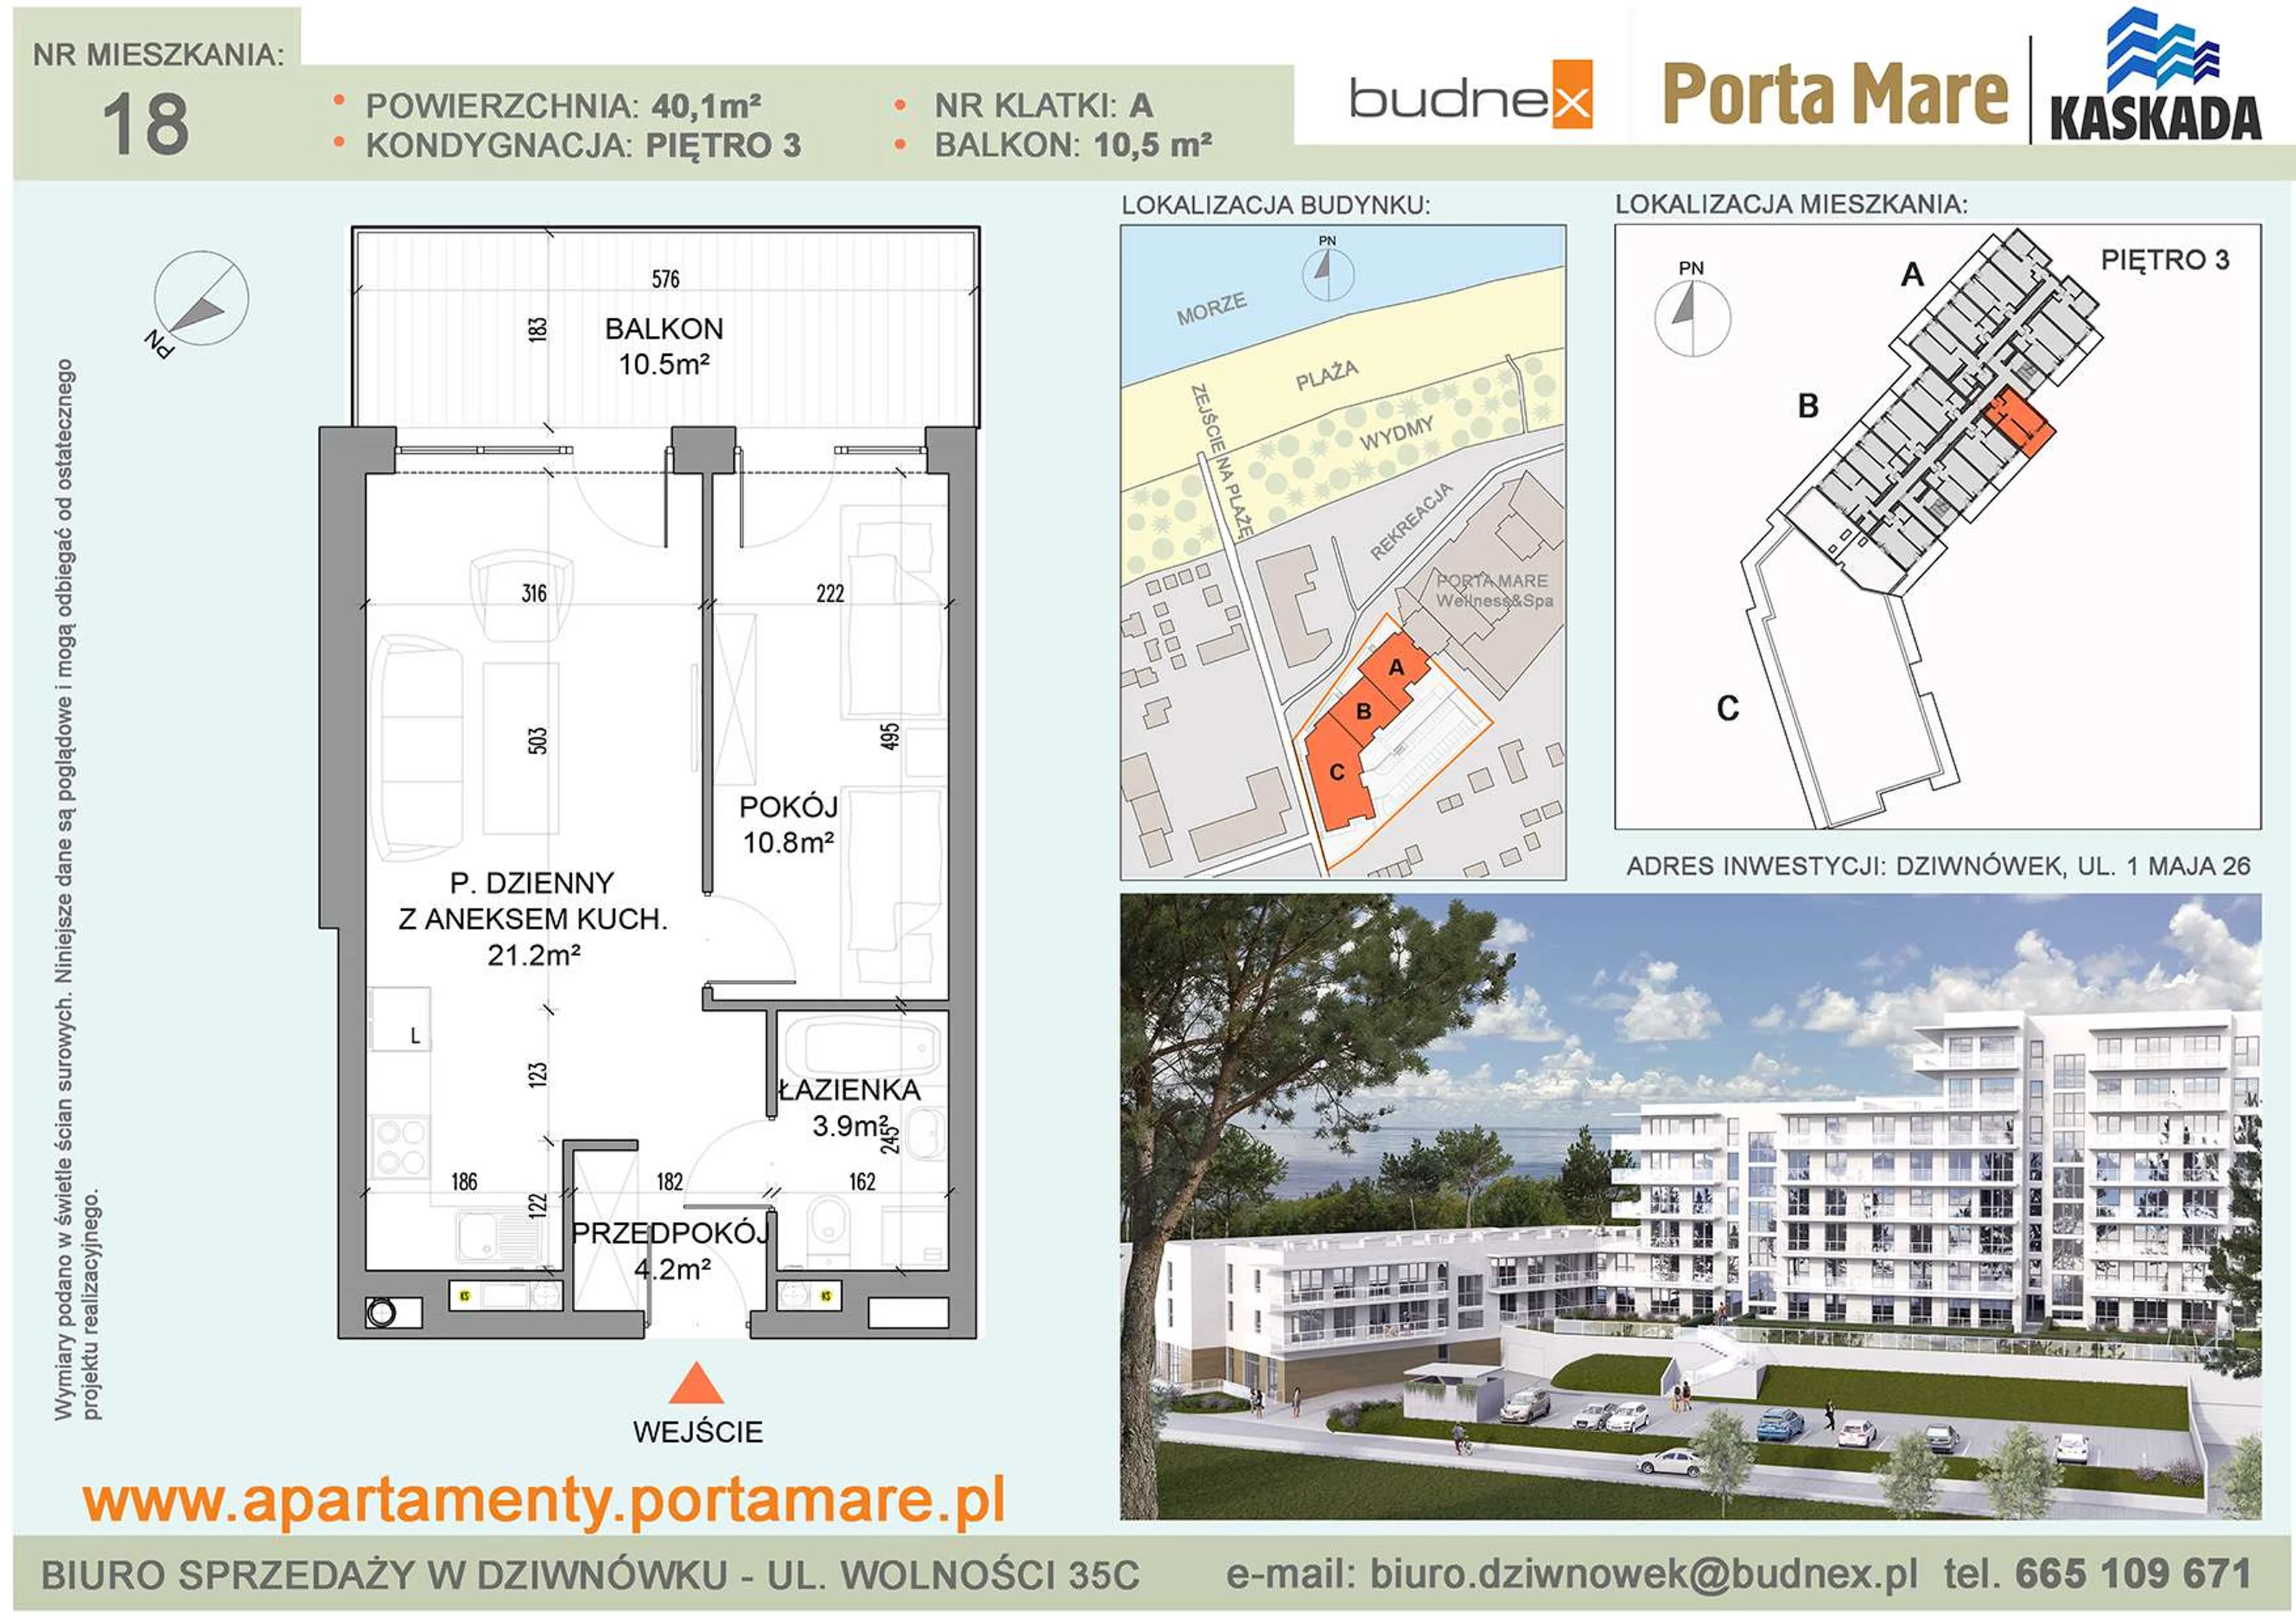 Mieszkanie 40,10 m², piętro 3, oferta nr A/M18, Porta Mare Kaskada, Dziwnówek, ul. 1 Maja 26